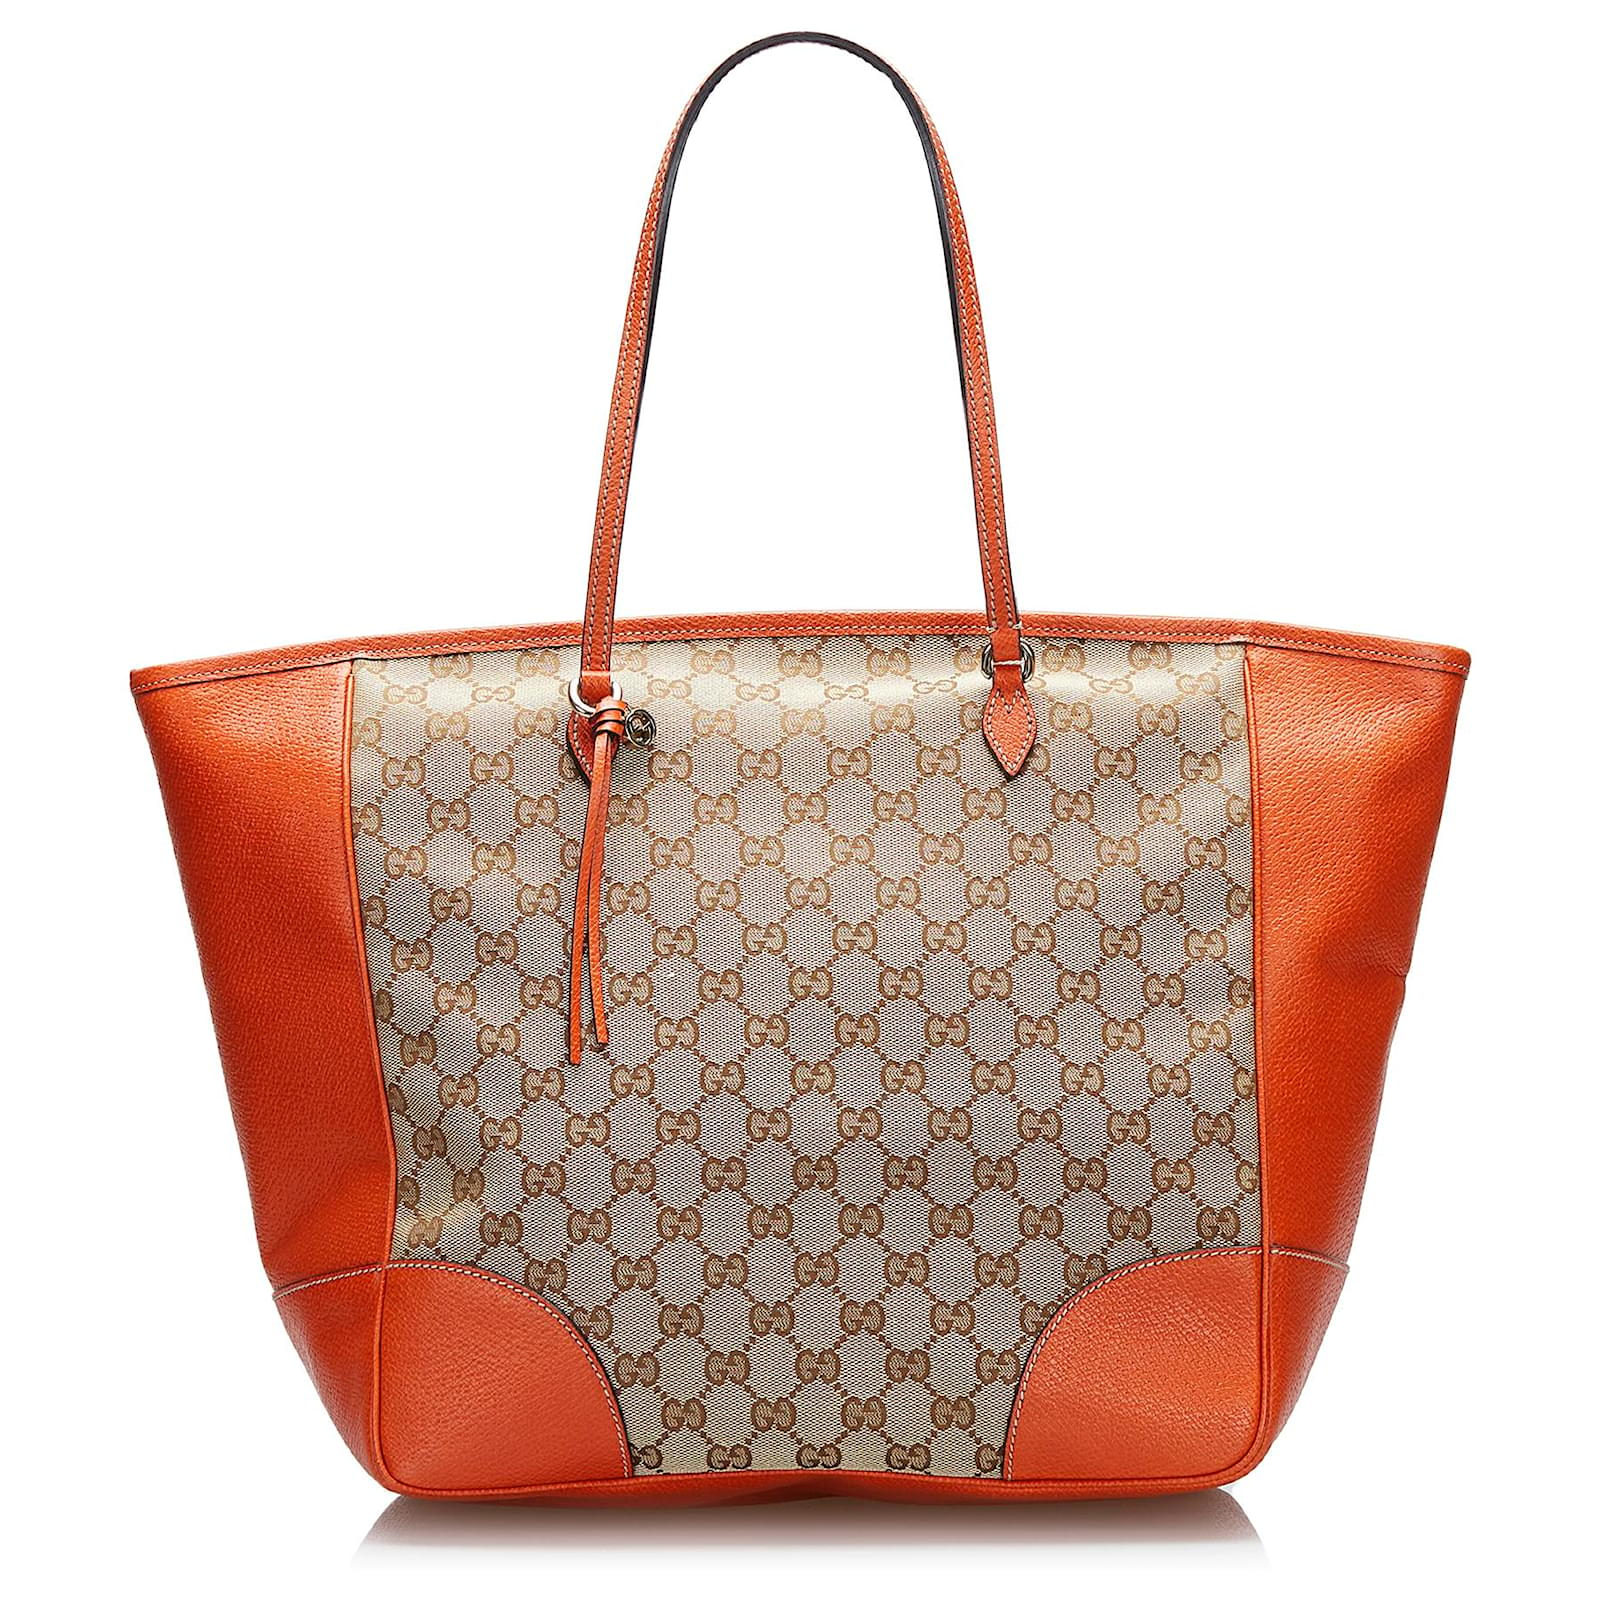 Totes bags Gucci - Bree Original GG canvas handle bag